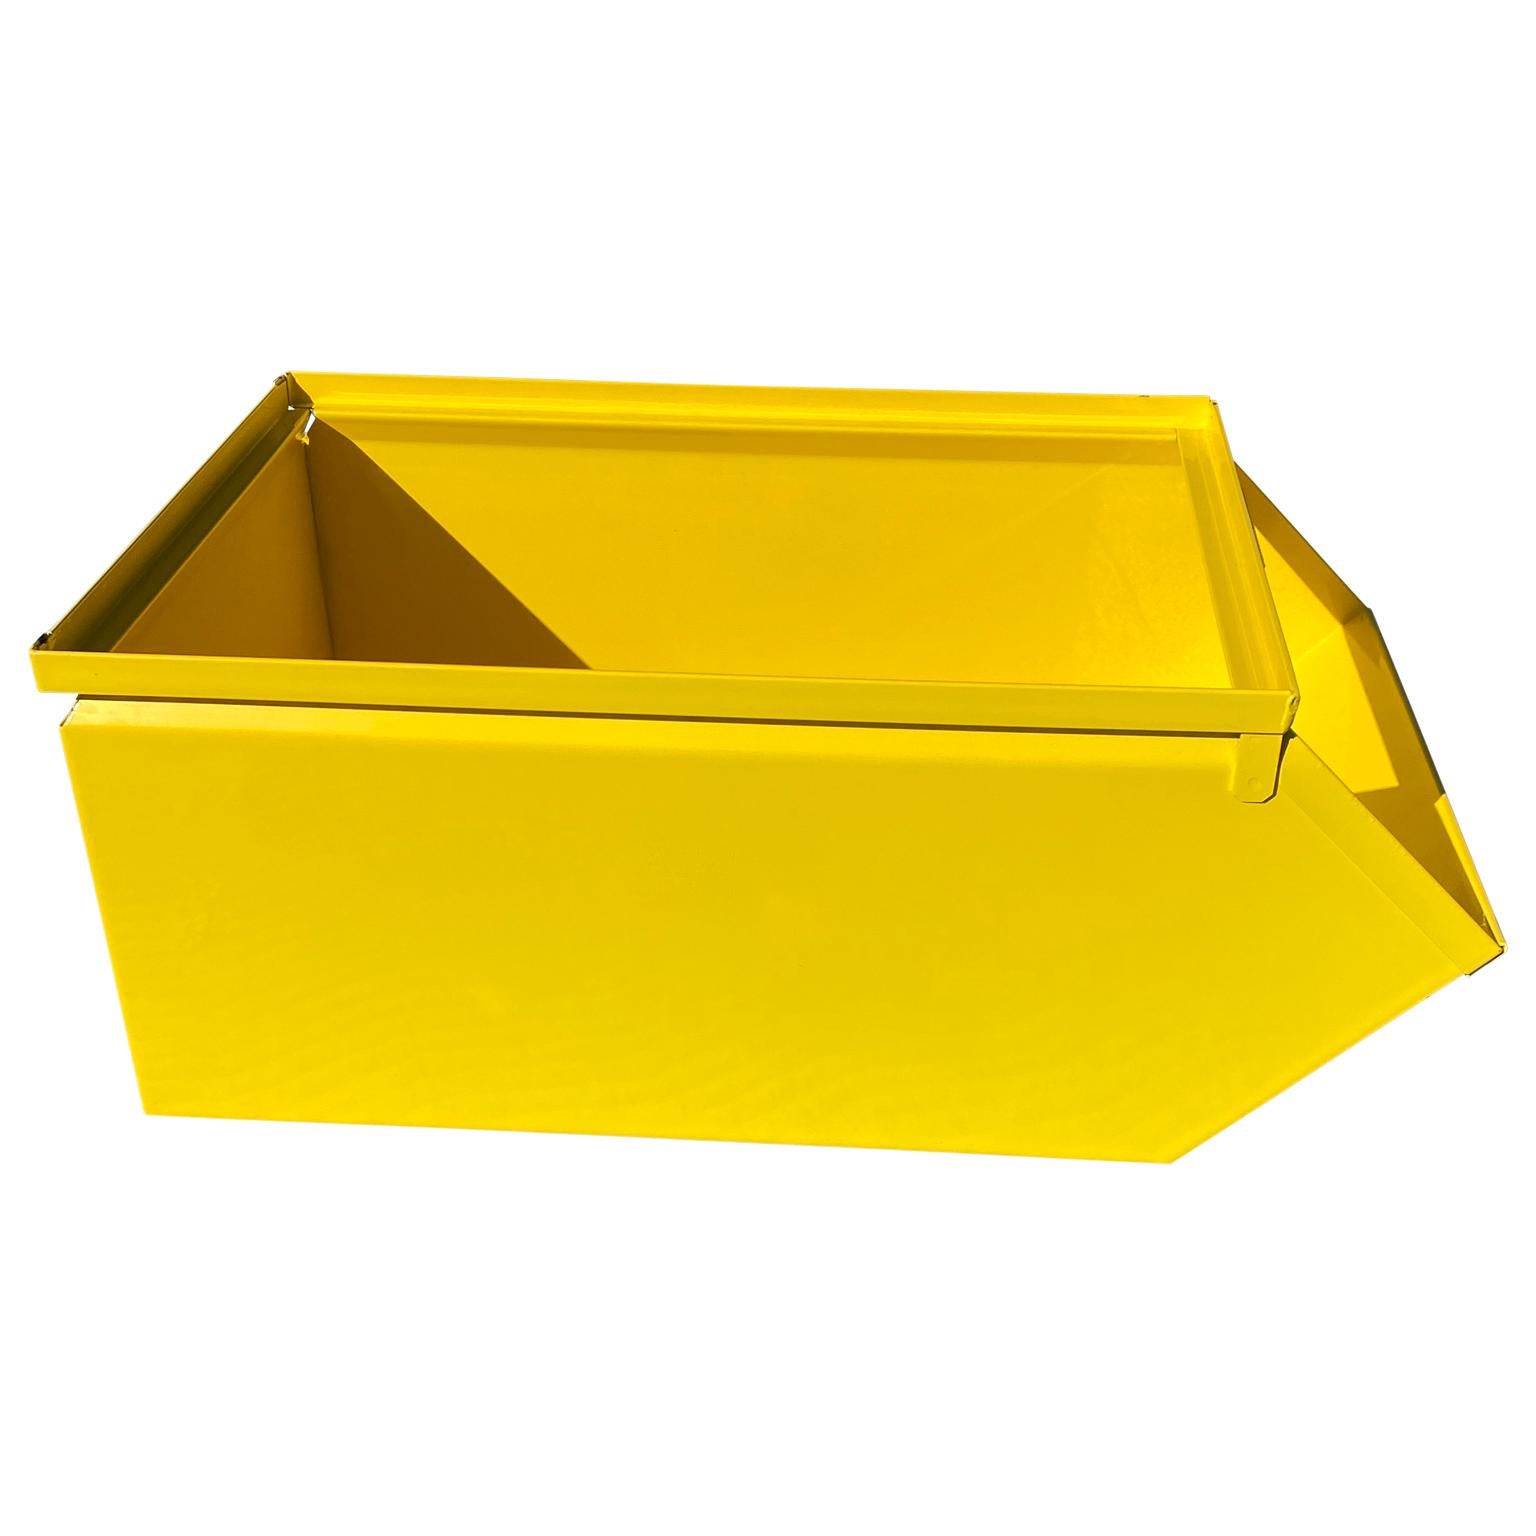 Collection de 10 grands bacs ou boîtes utilitaires industriels vintage en métal jaune soleil à revêtement en poudre

Les autres couleurs sont facultatives, puisqu'une seule a été revêtue de poudre. 
Le délai de livraison pour les 9 unités